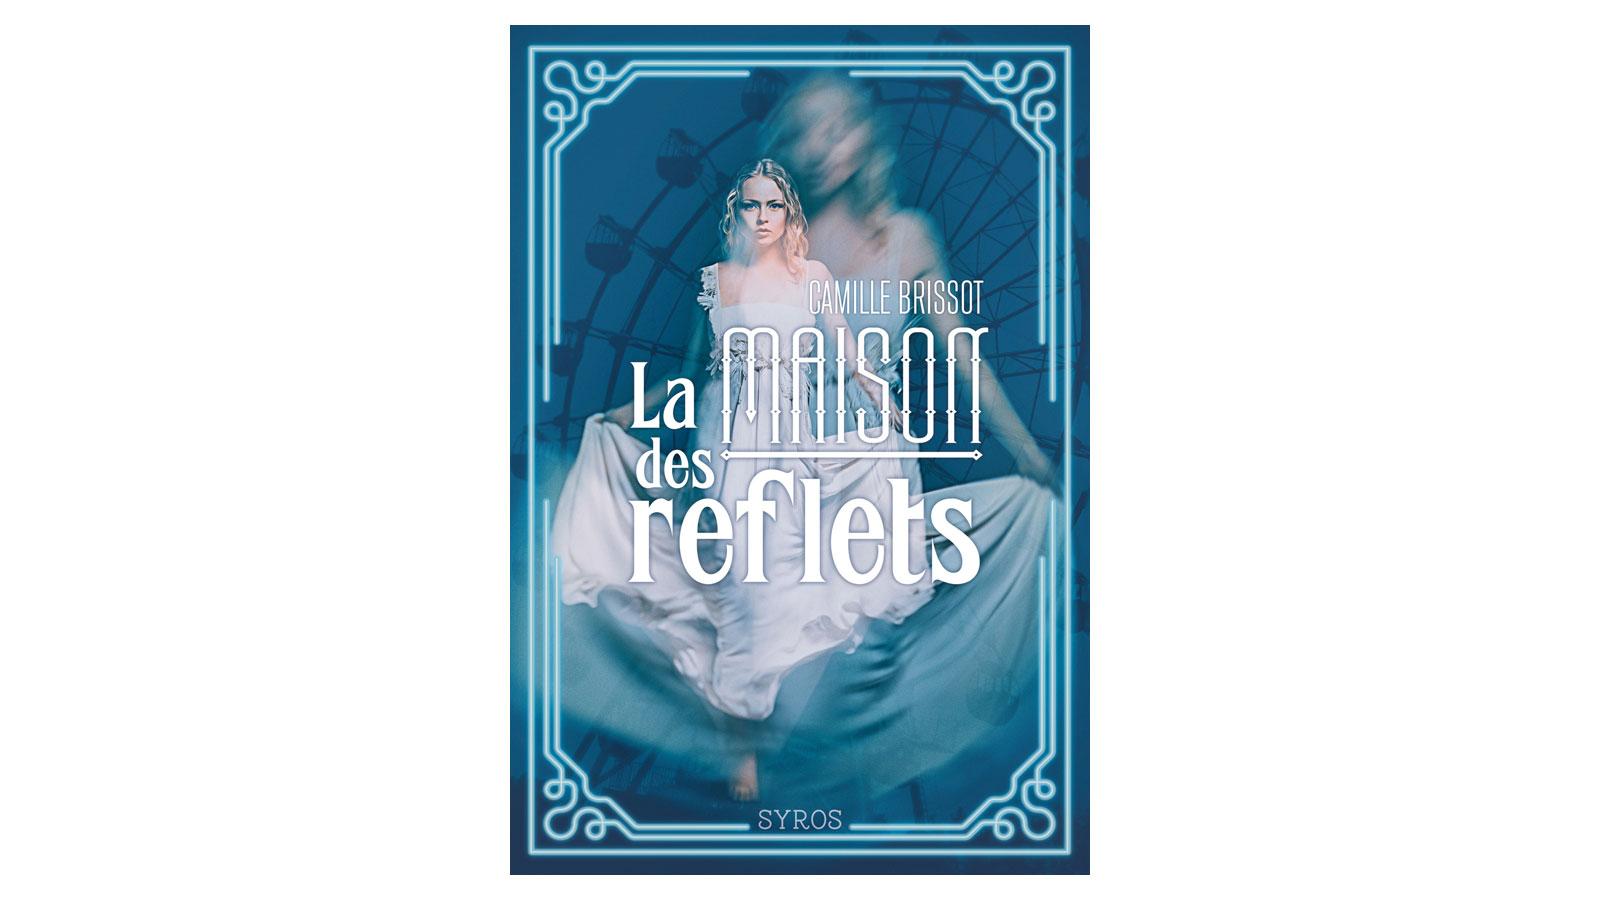 La couverture du livre "La maison des reflets", de Camille Brissot , paru aux éditions Syros.Sélection du Prix RTS Littérature AdosEditions Syros [Editions Syros]